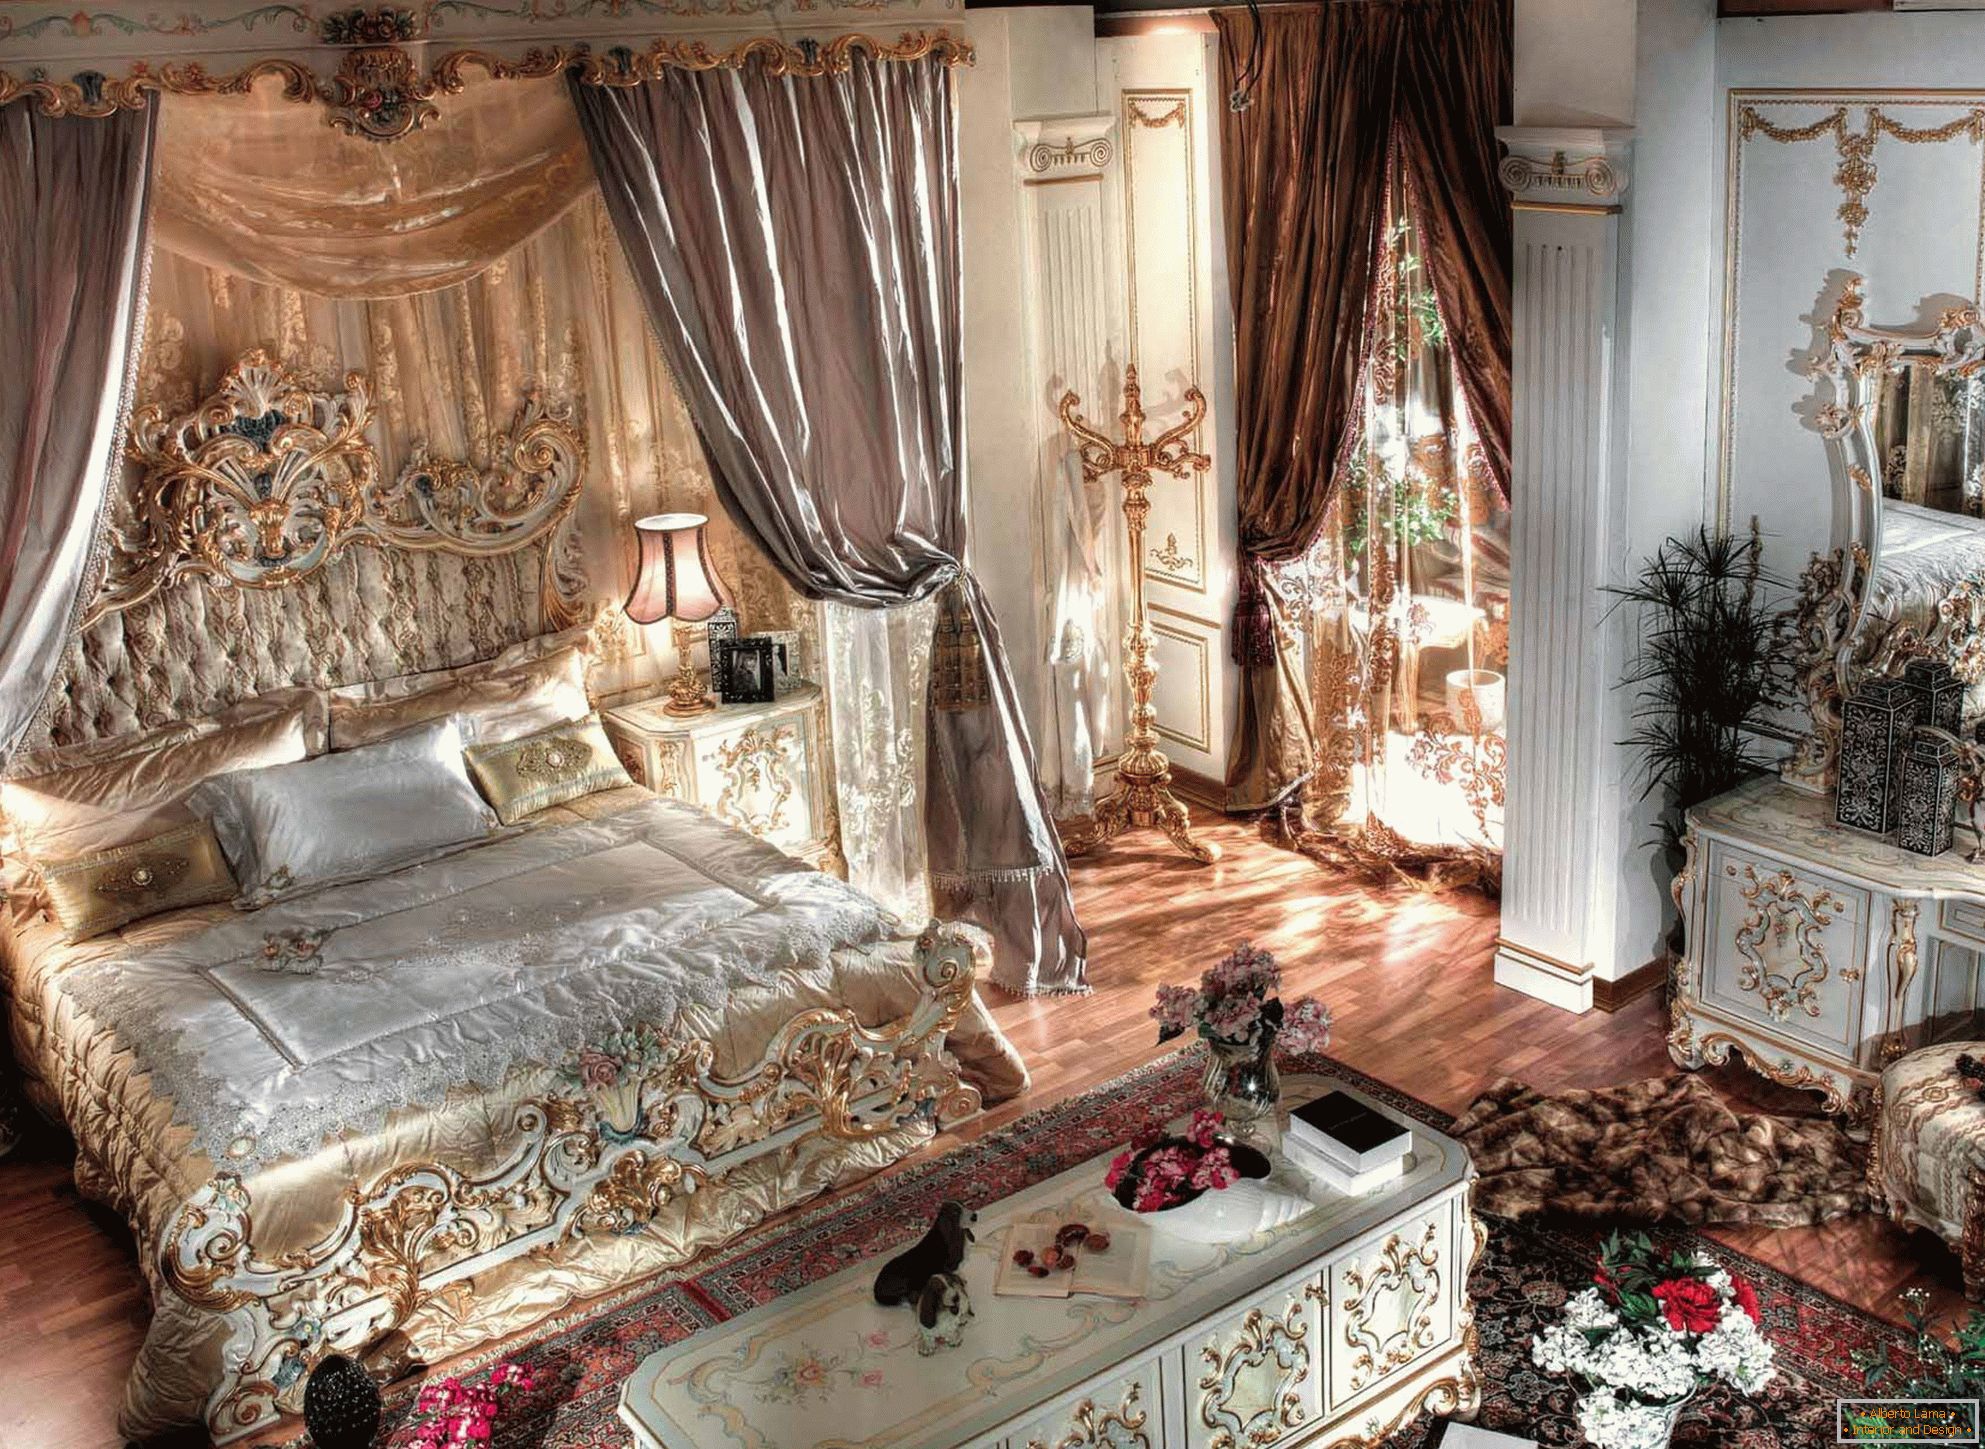 Lujosa habitación barroca con techos altos. En el centro de la composición hay una cama maciza de madera con respaldos tallados.